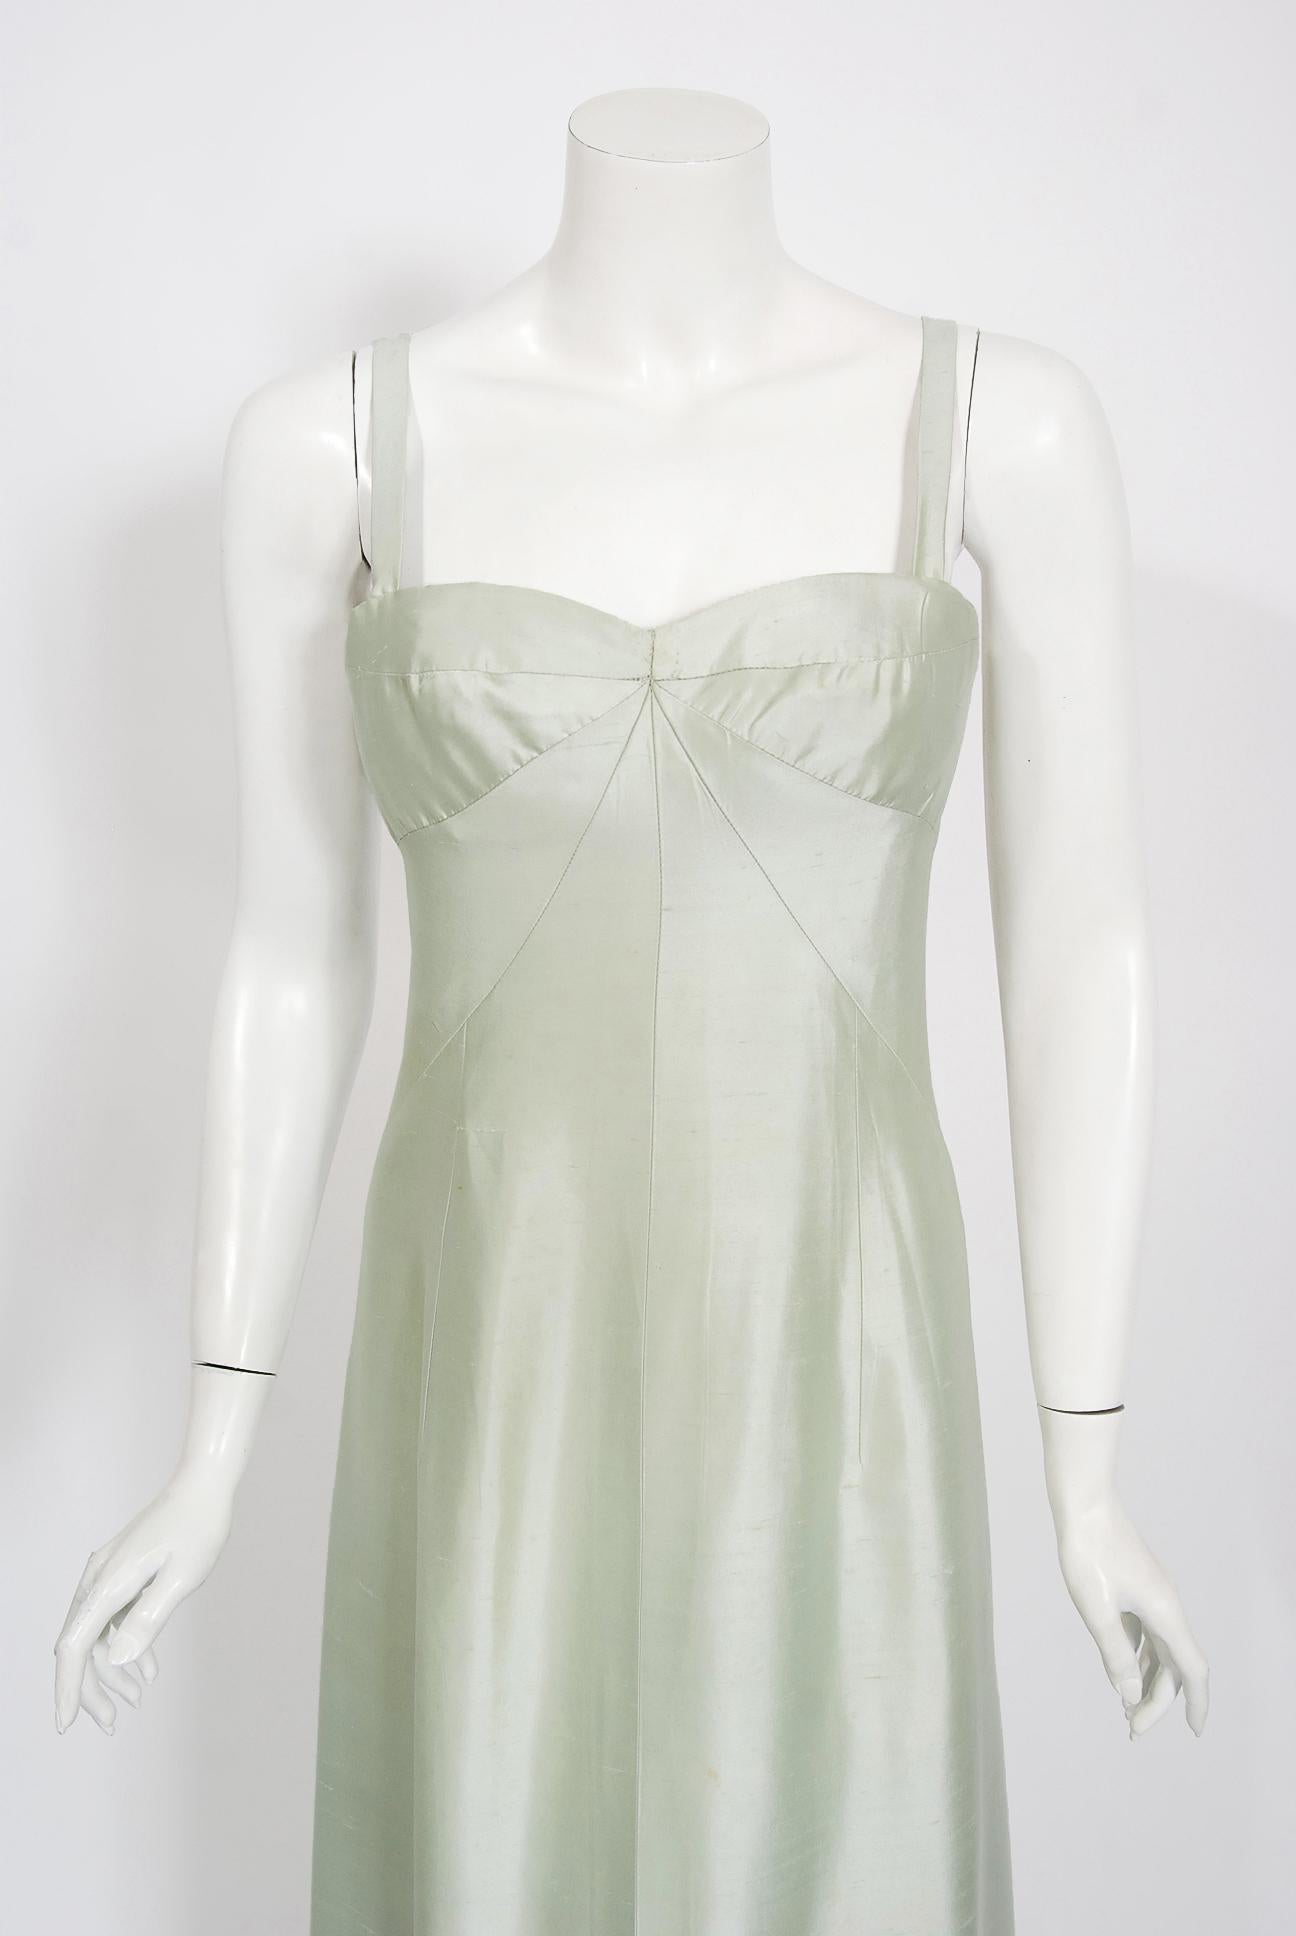 vintage designer gowns